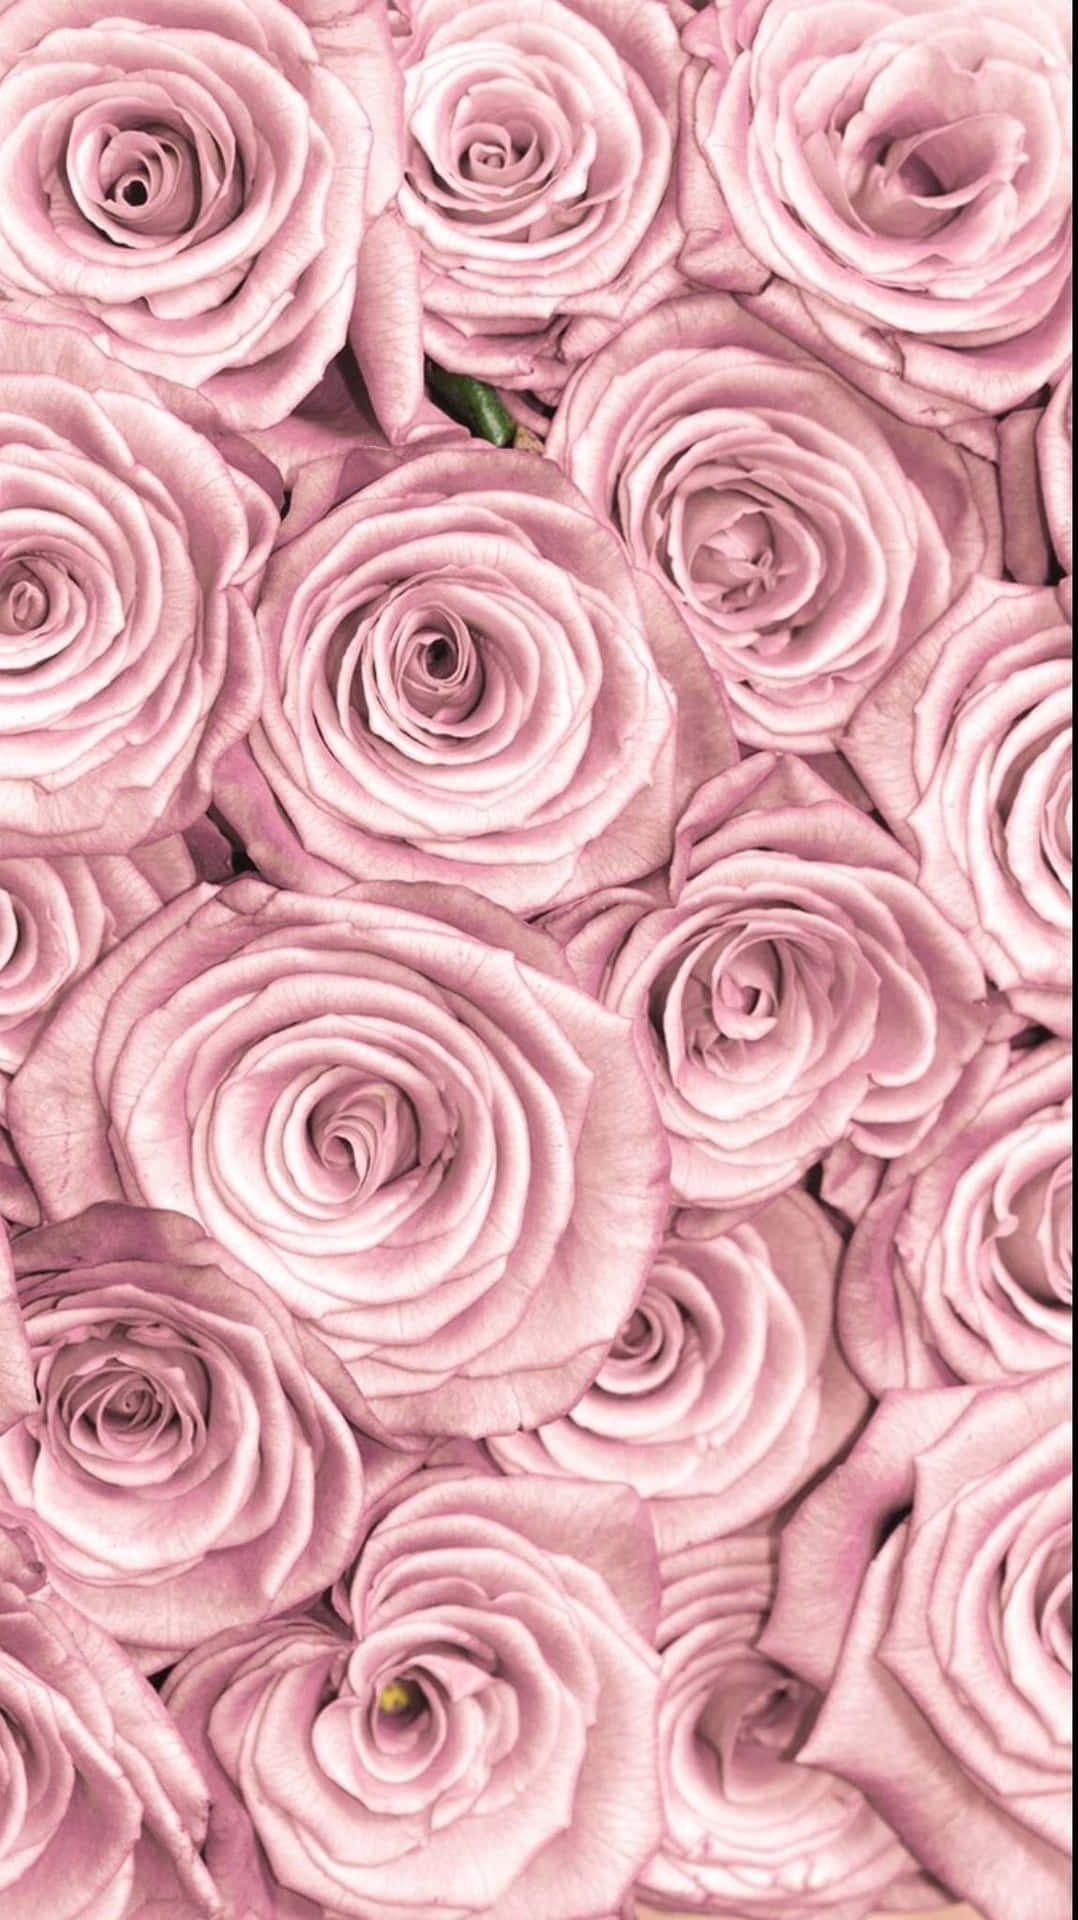 Einezarte Rosa Rose, Zusammengesetzt Aus Pulsierenden Schichten Von Blütenblättern Um Ein Lebendiges Gelbes Zentrum. Wallpaper